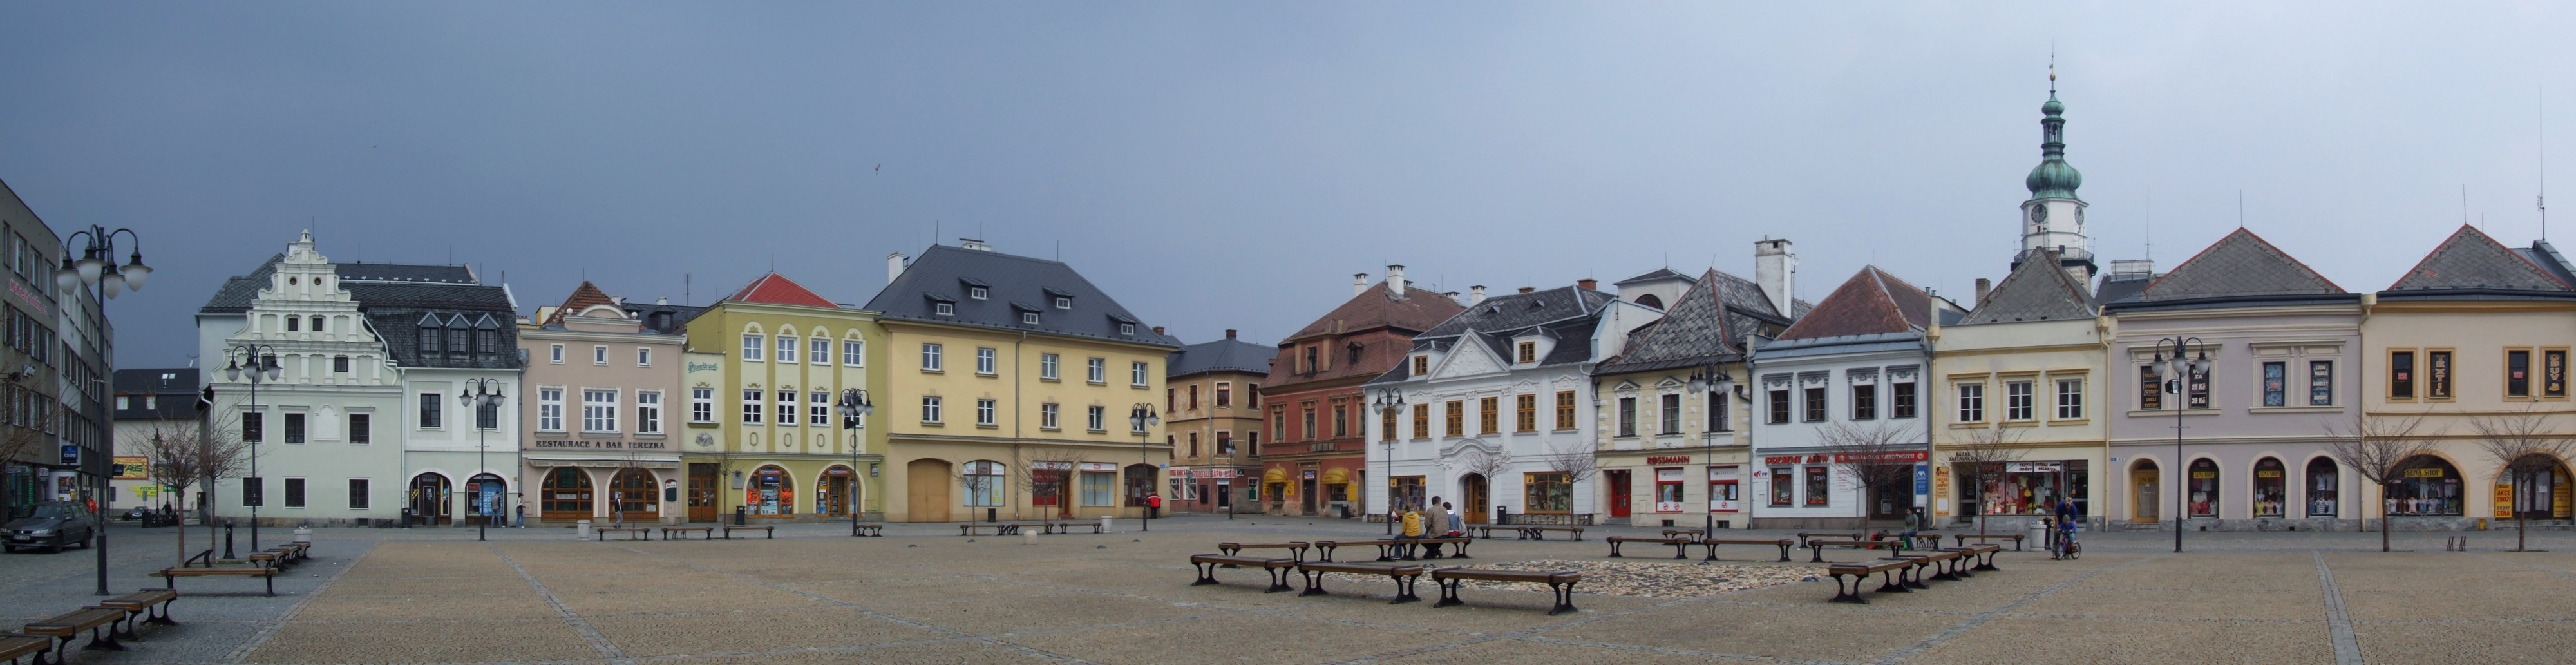 Bruntál (Freudenthal) - market square